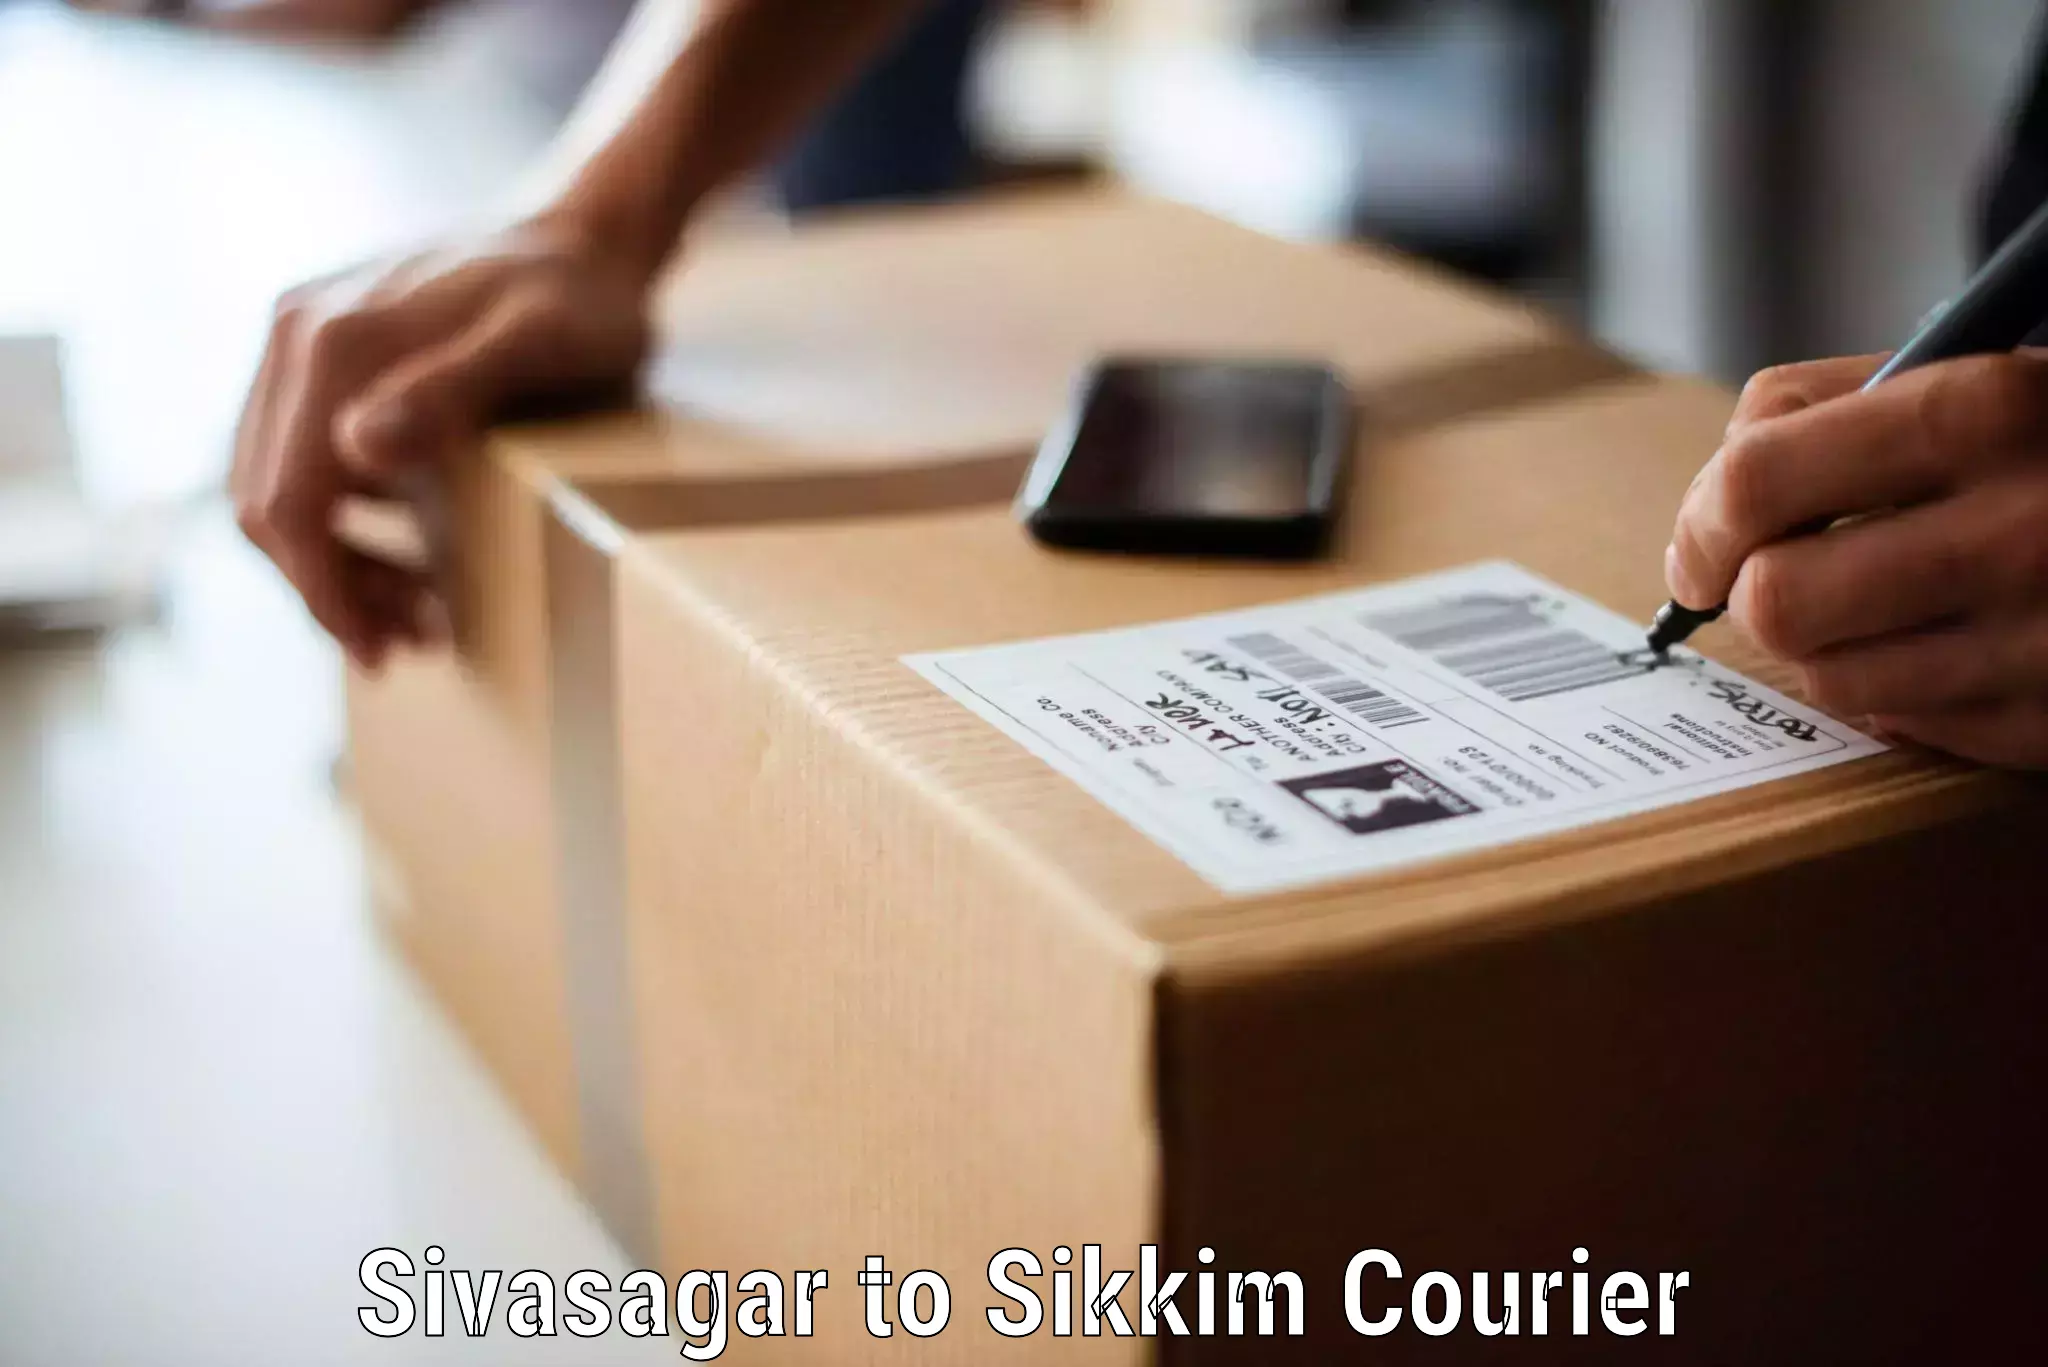 Safe household movers Sivasagar to Gangtok